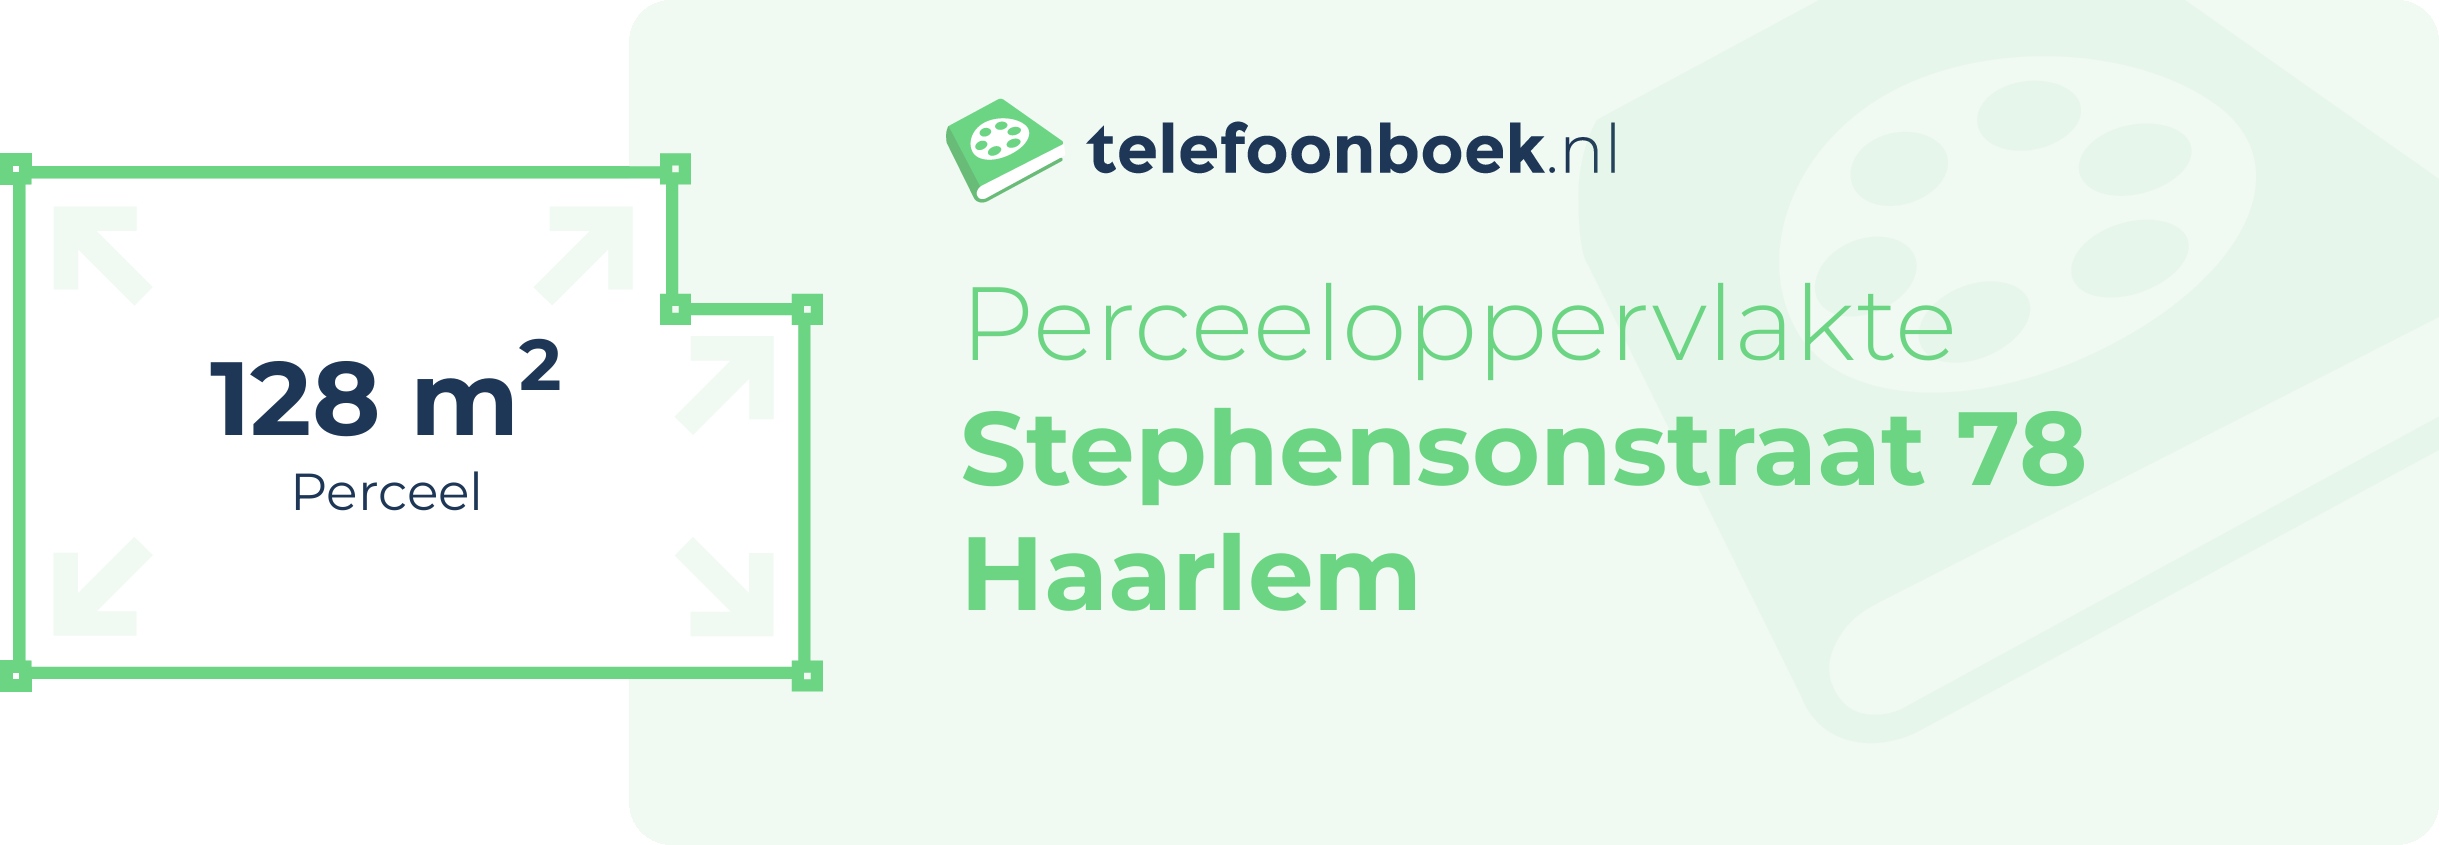 Perceeloppervlakte Stephensonstraat 78 Haarlem